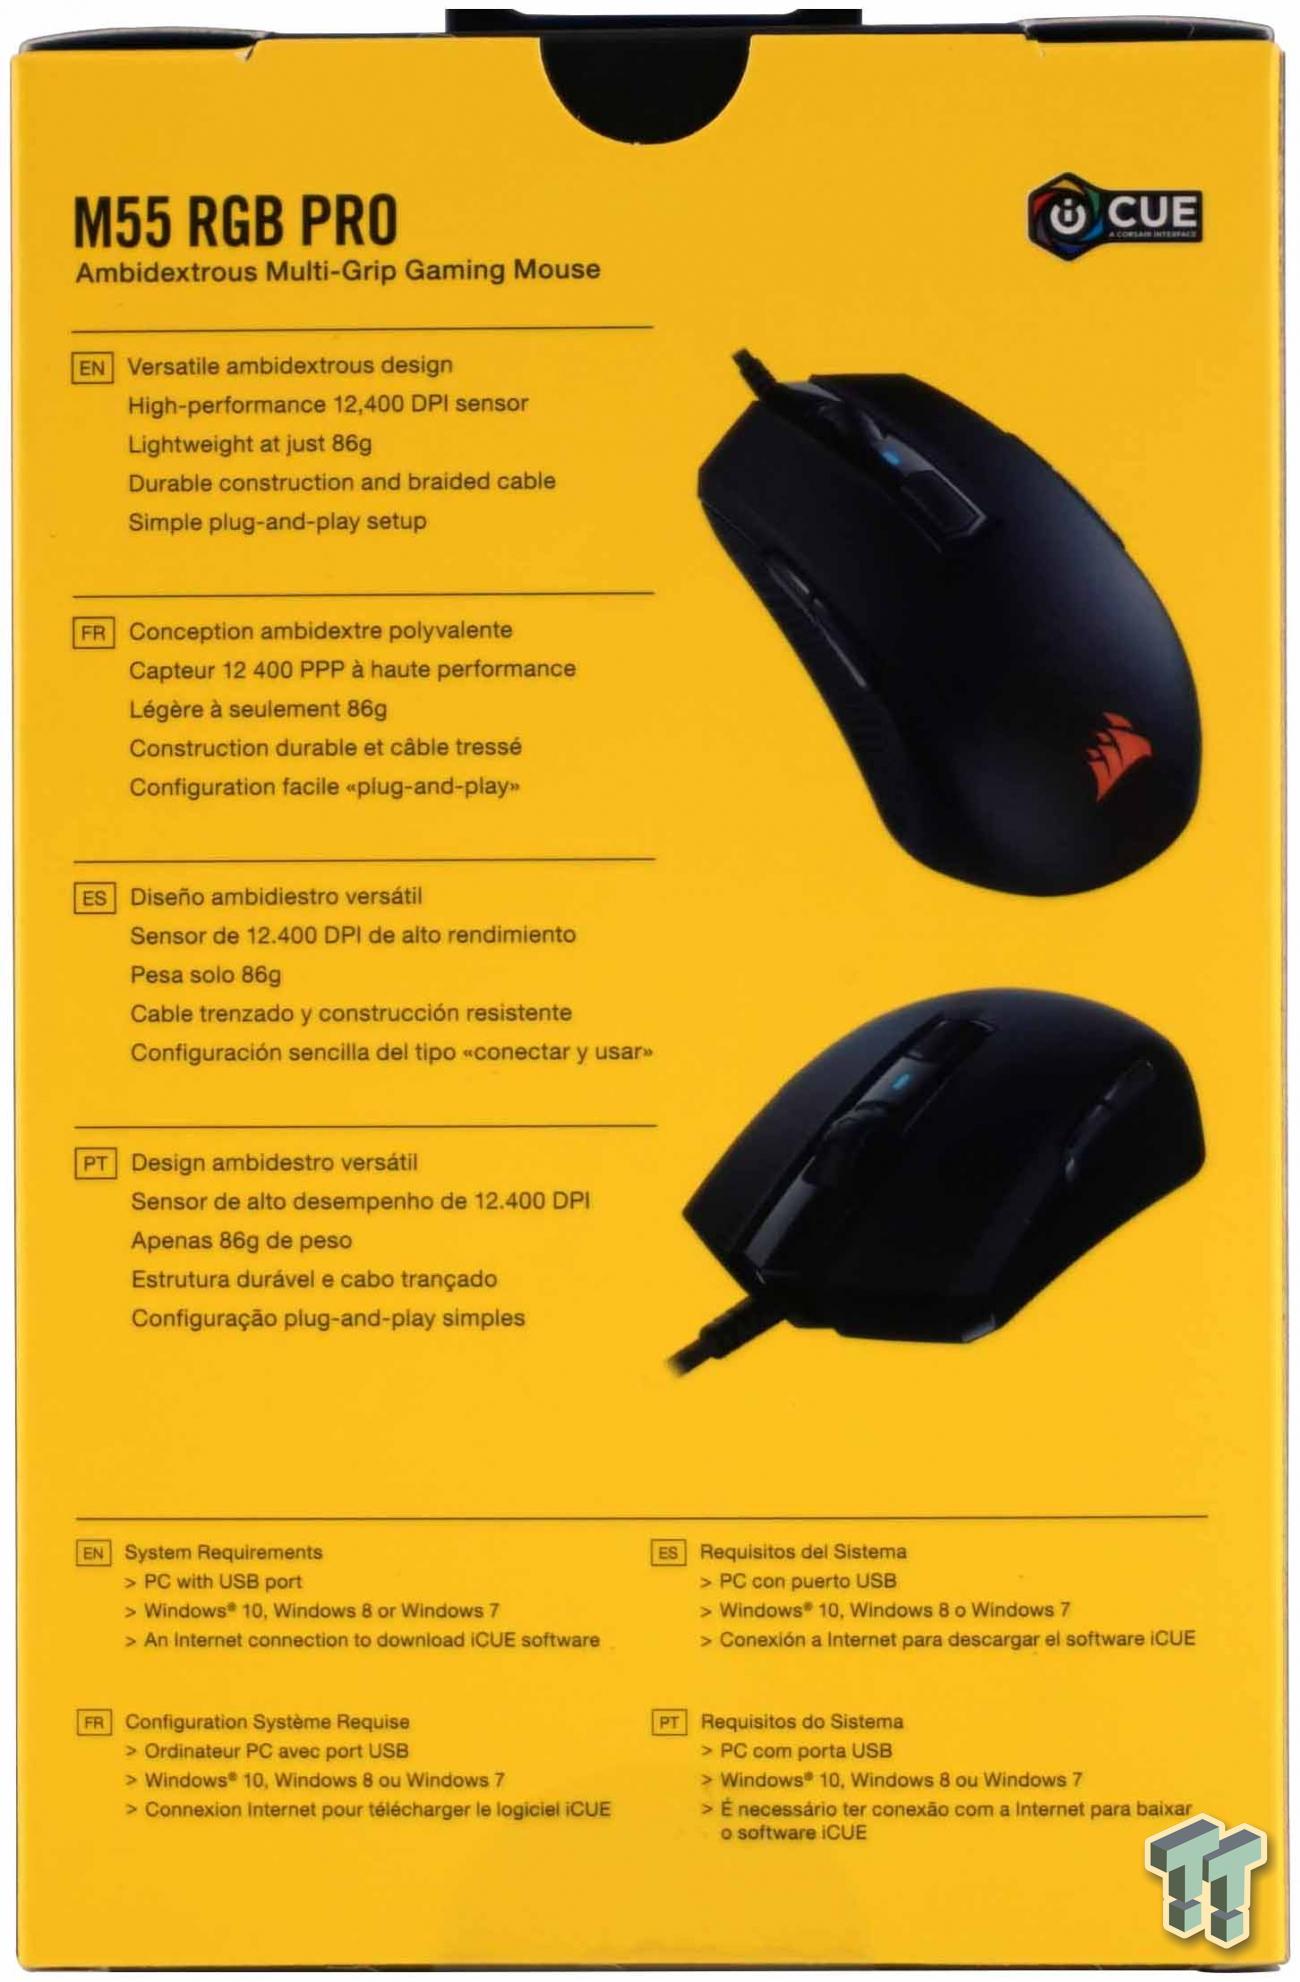 Corsair M55 RGB PRO Ambidextrous Mouse Review